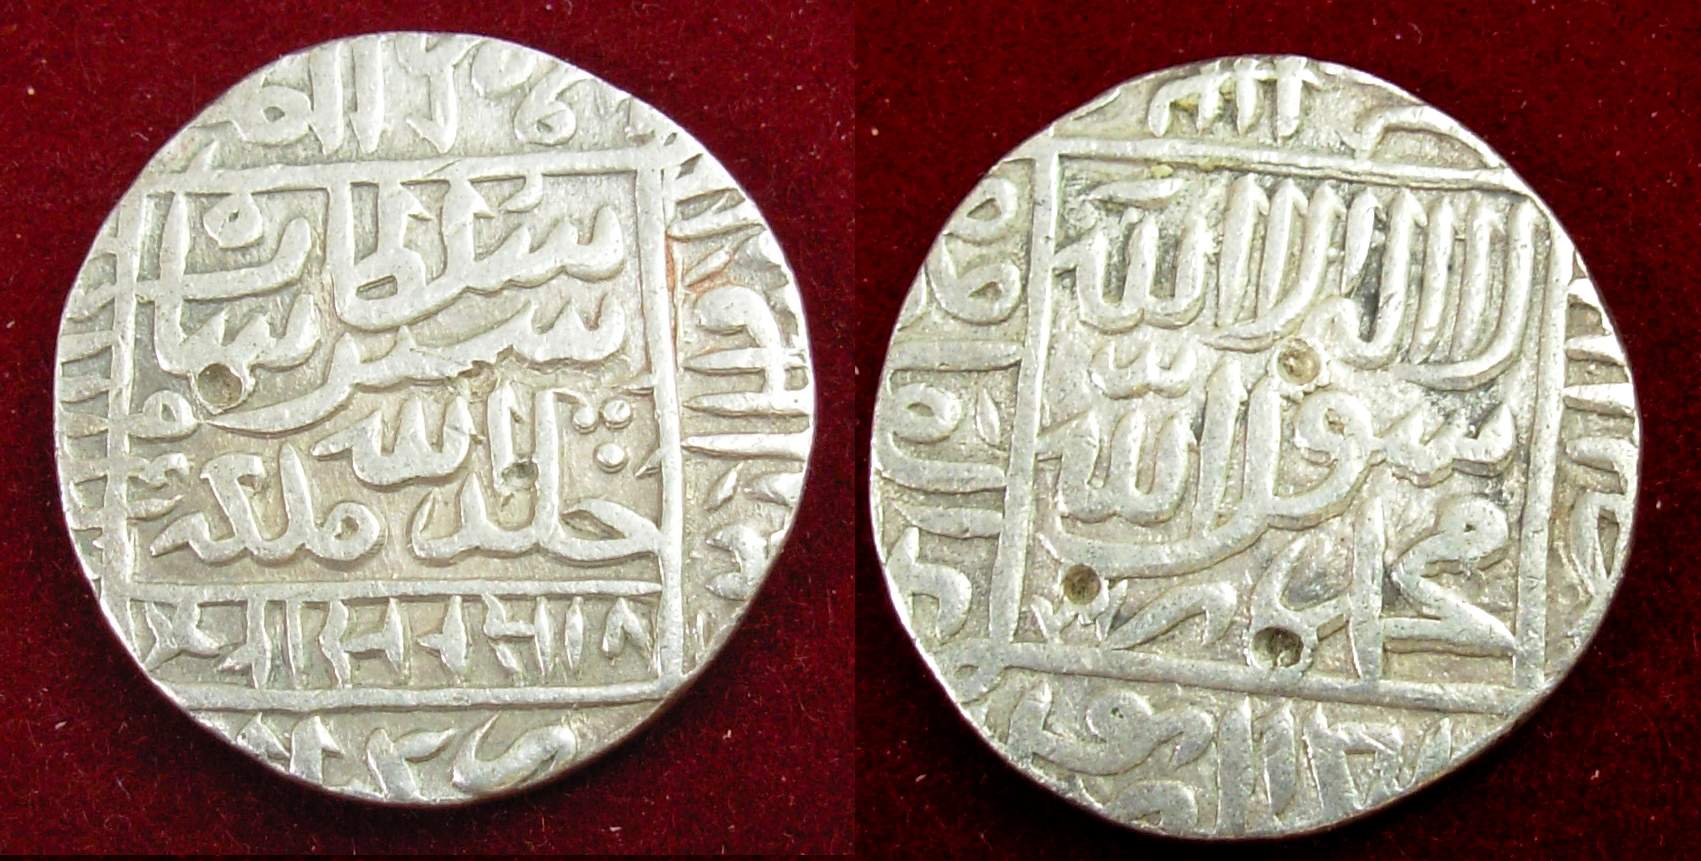 Sher Shah Suri's Rupaiya